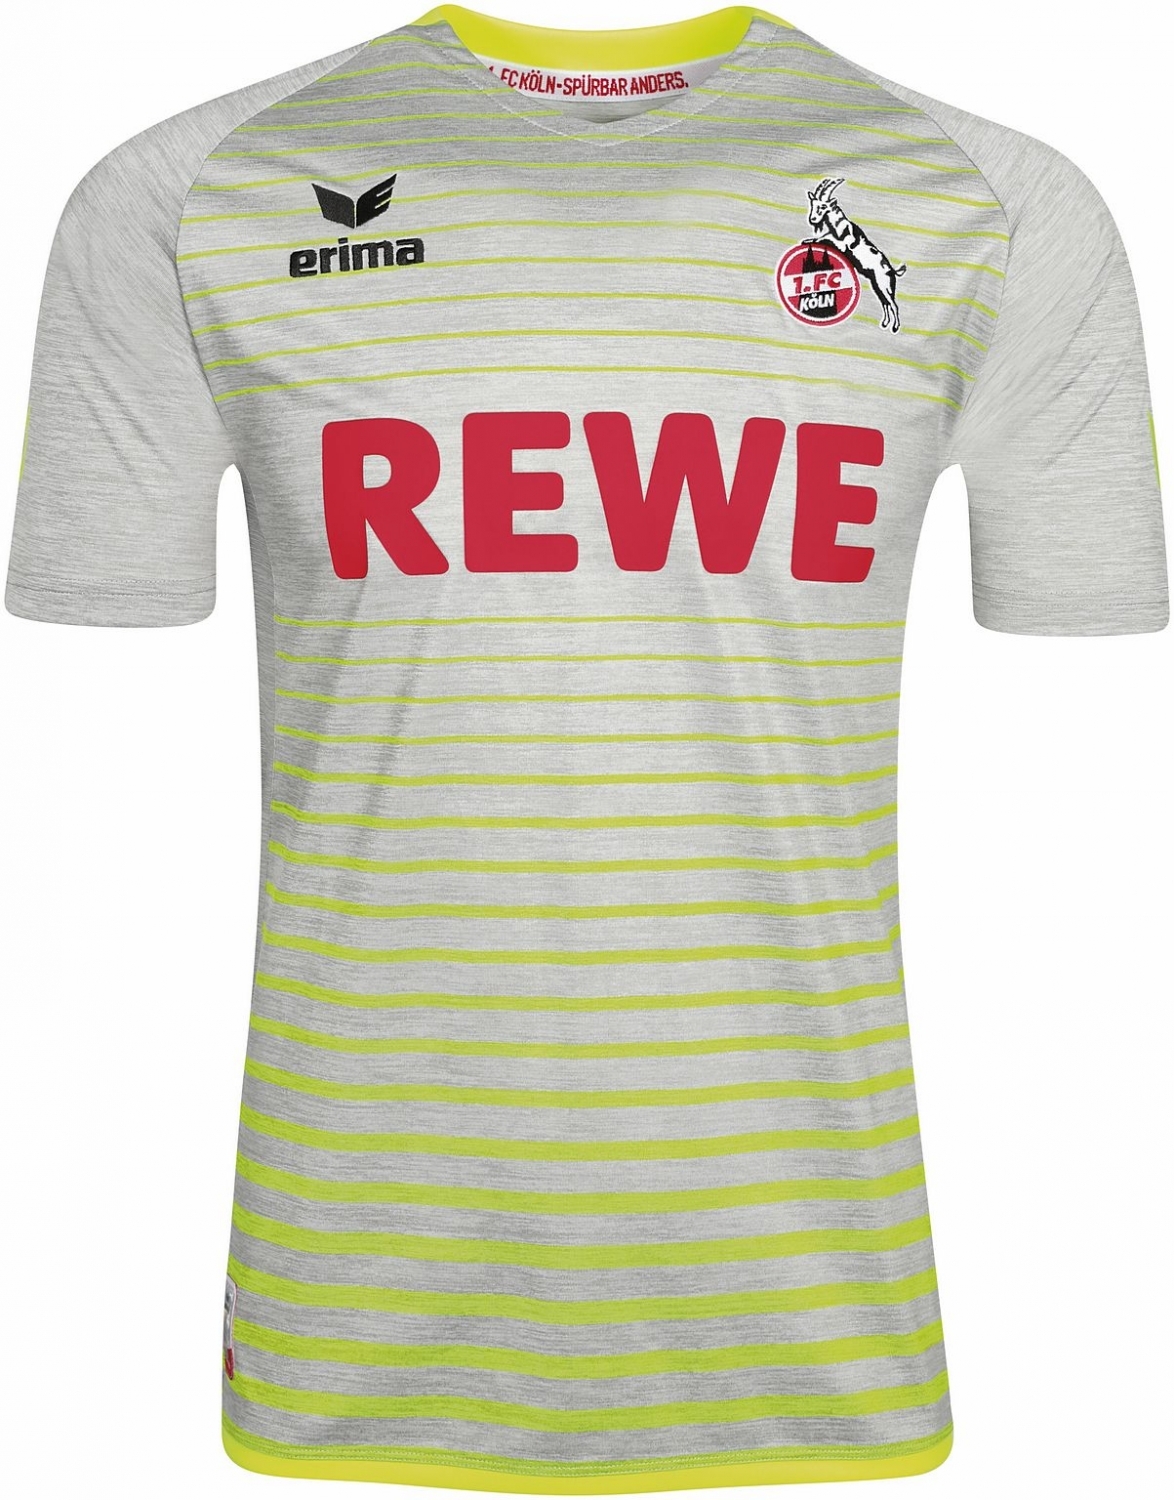 Erima 1. FC Köln Kinder Ausweichtrikot Away 2017/2018 grau gelb